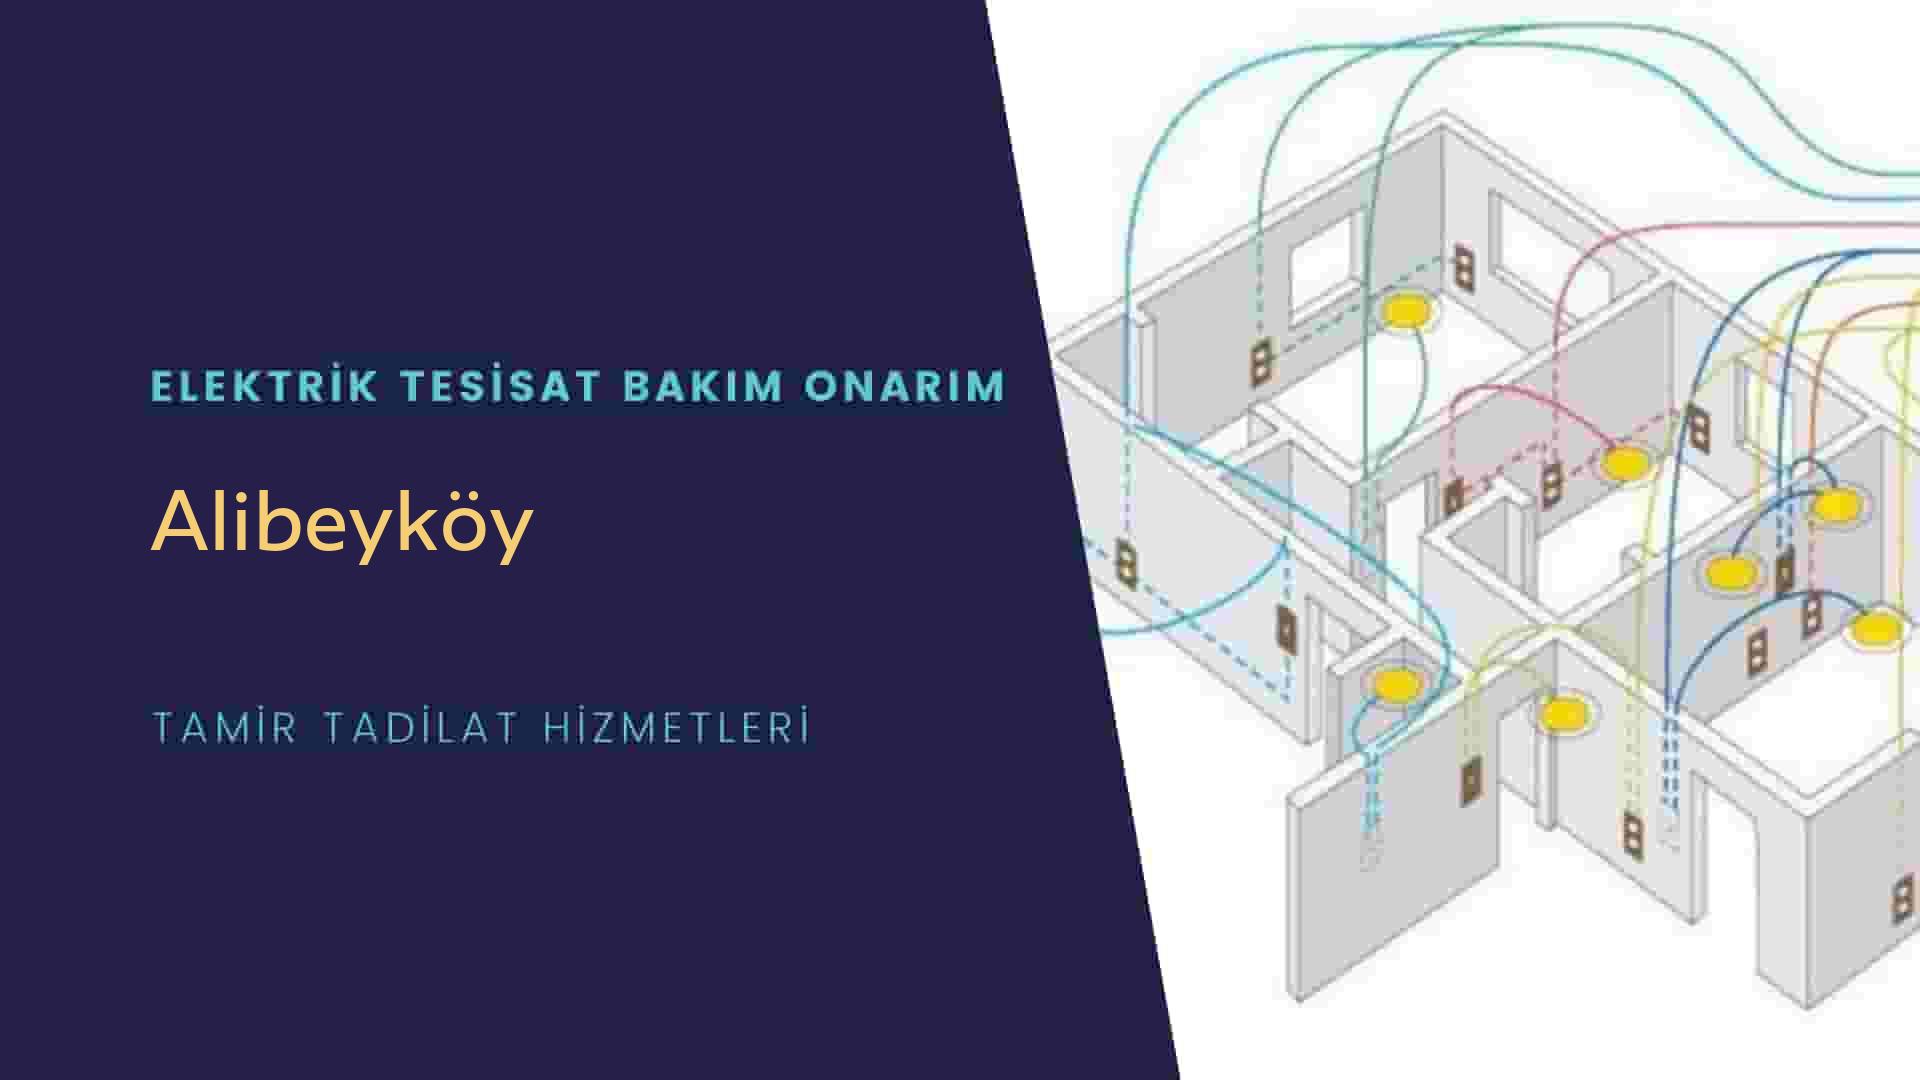 Alibeyköy'de elektrik tesisatı ustalarımı arıyorsunuz doğru adrestenizi Alibeyköy elektrik tesisatı ustalarımız 7/24 sizlere hizmet vermekten mutluluk duyar.